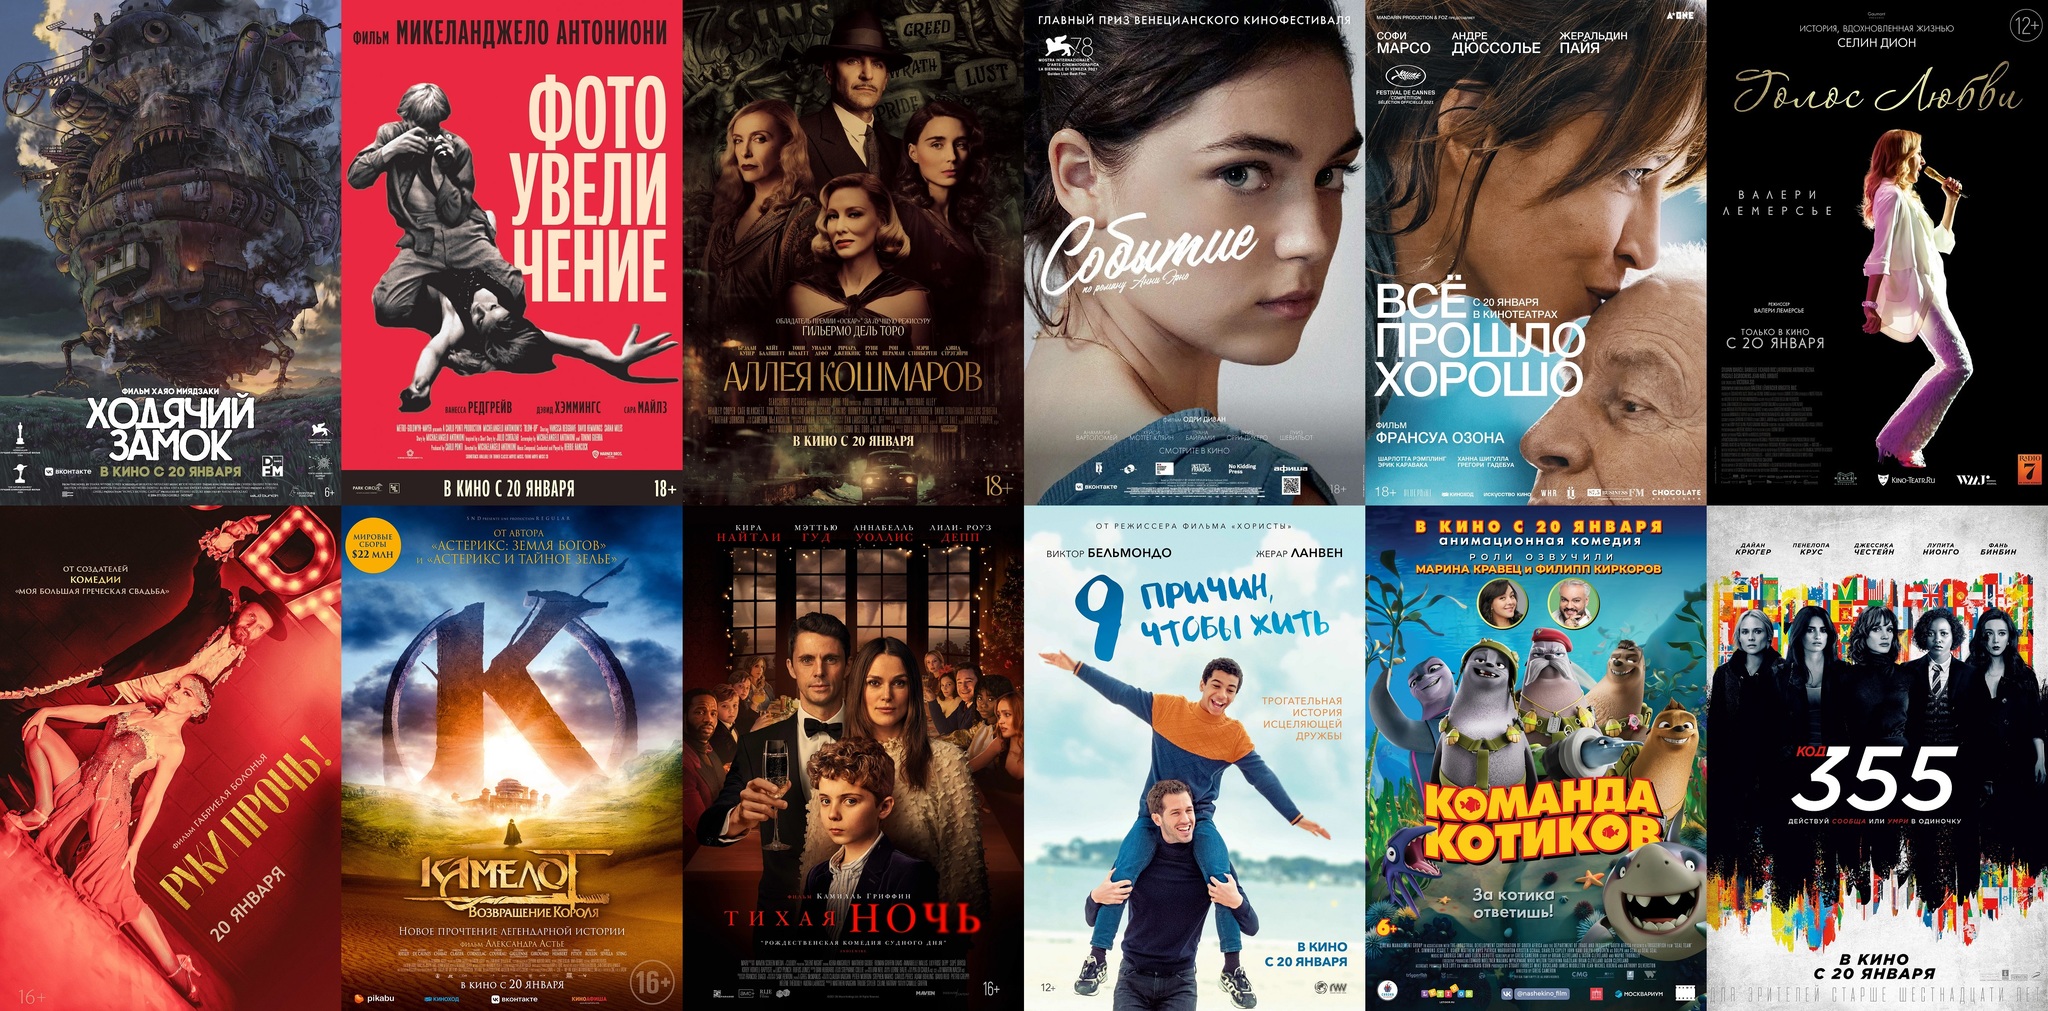 Как кинотеатры в России показывают зарубежные фильмы с предсеансовым обслуживанием